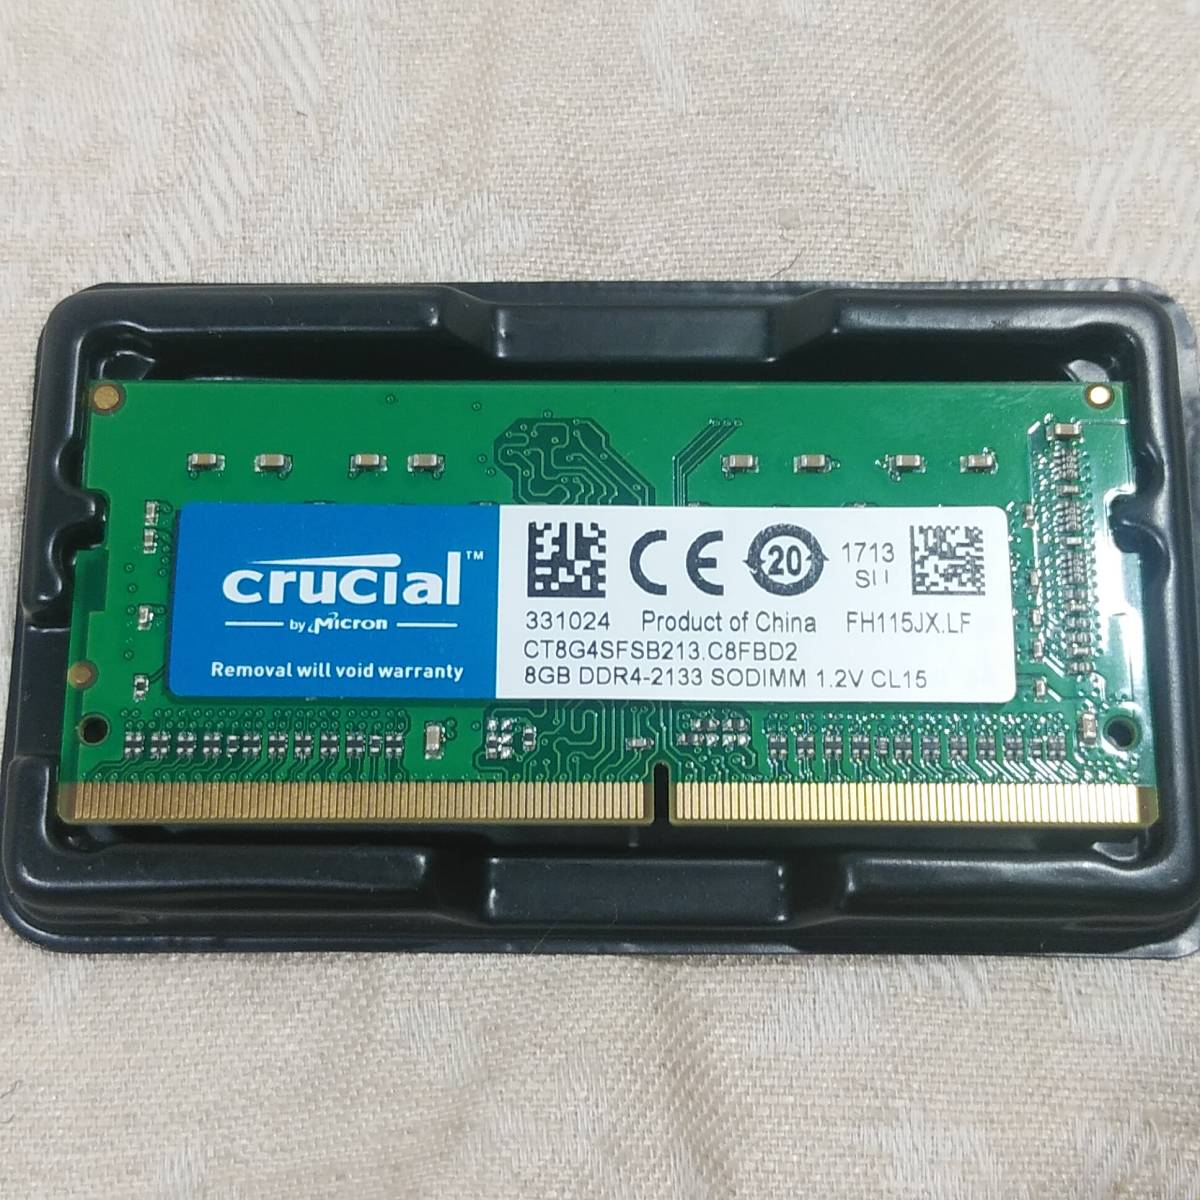  новый товар Crucial Crew автомобиль ru8GB память DDR4 PC4-17000 2133MHz 260Pin Note PC для CL15 SODIMM LAP верх память бесплатная доставка 